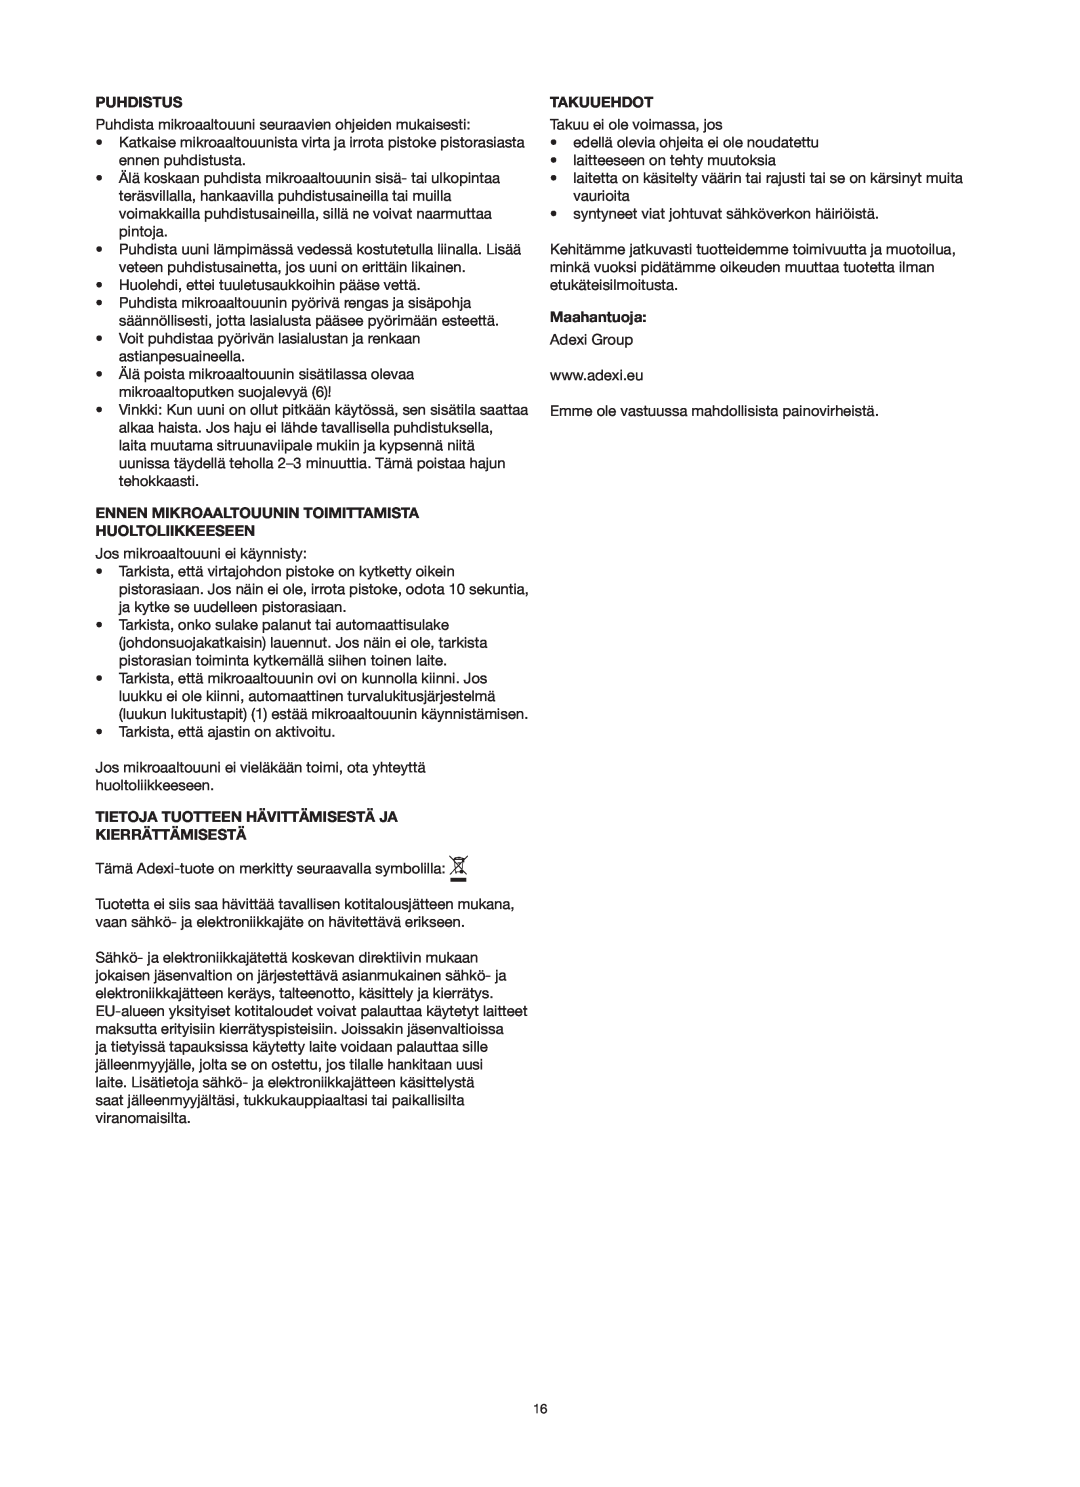 Melissa 753-125 manual Puhdistus, Ennen Mikroaaltouunin Toimittamista Huoltoliikkeeseen, Takuuehdot, Maahantuoja 